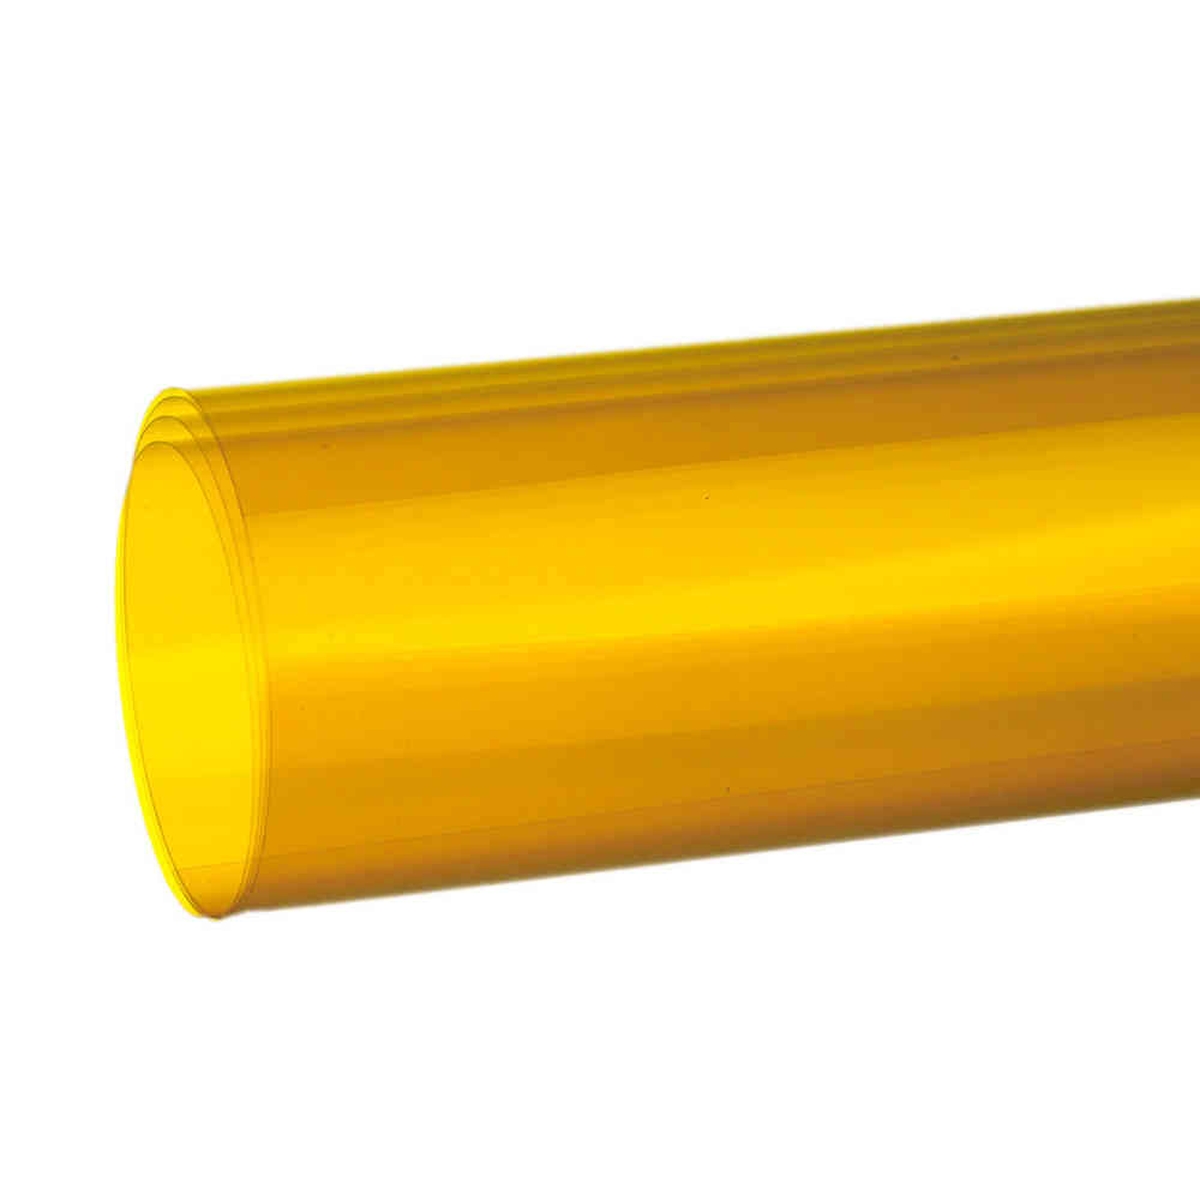 Hedler MaxiSoft Filterfolie gelb 40 x 60 cm - Farbeffektfilter     